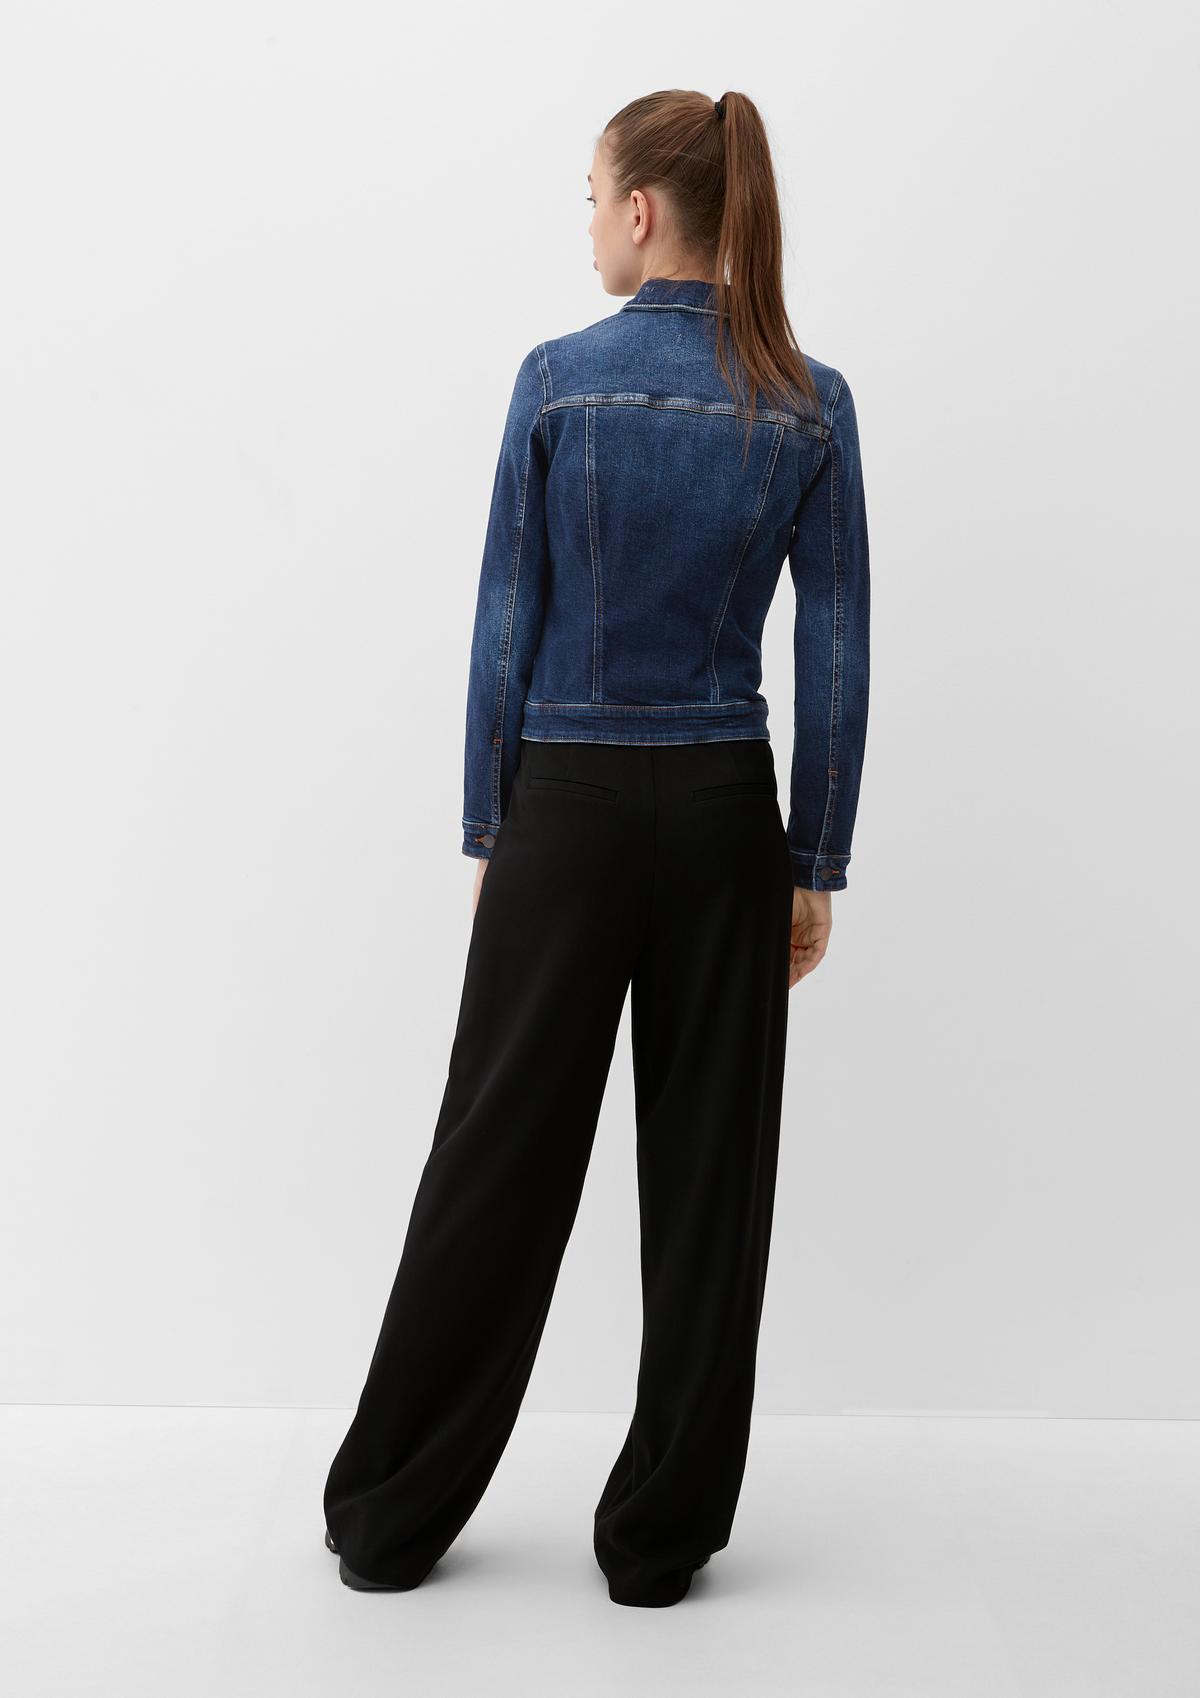 Jeansjacke aus Baumwollstretch blau 